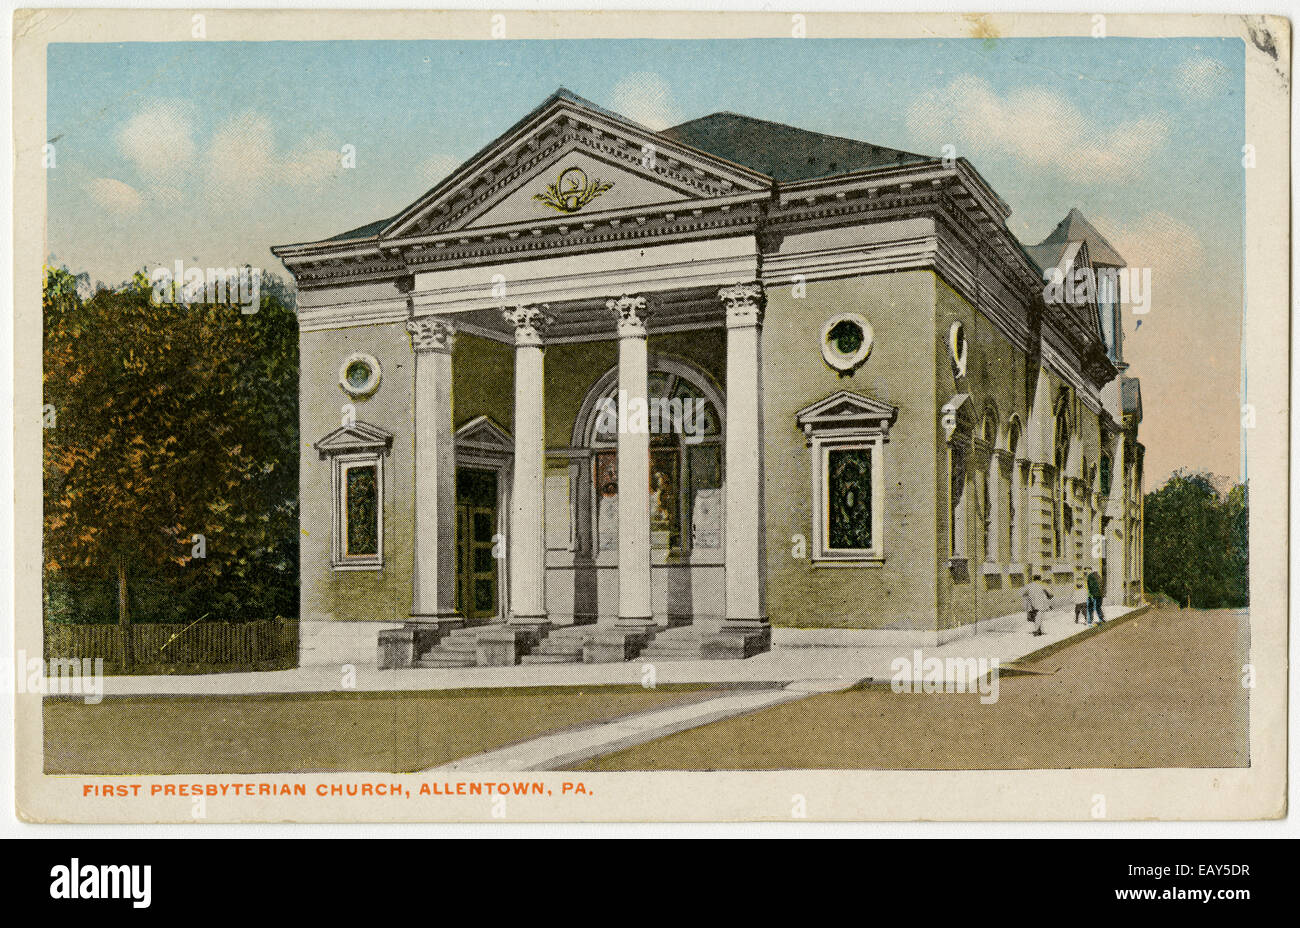 Am ersten presbyterianischen Kirche in Allentown, Pennsylvania nach einer Pre-1923 Postkarte von RG-428 Postkartensammlung, Stockfoto